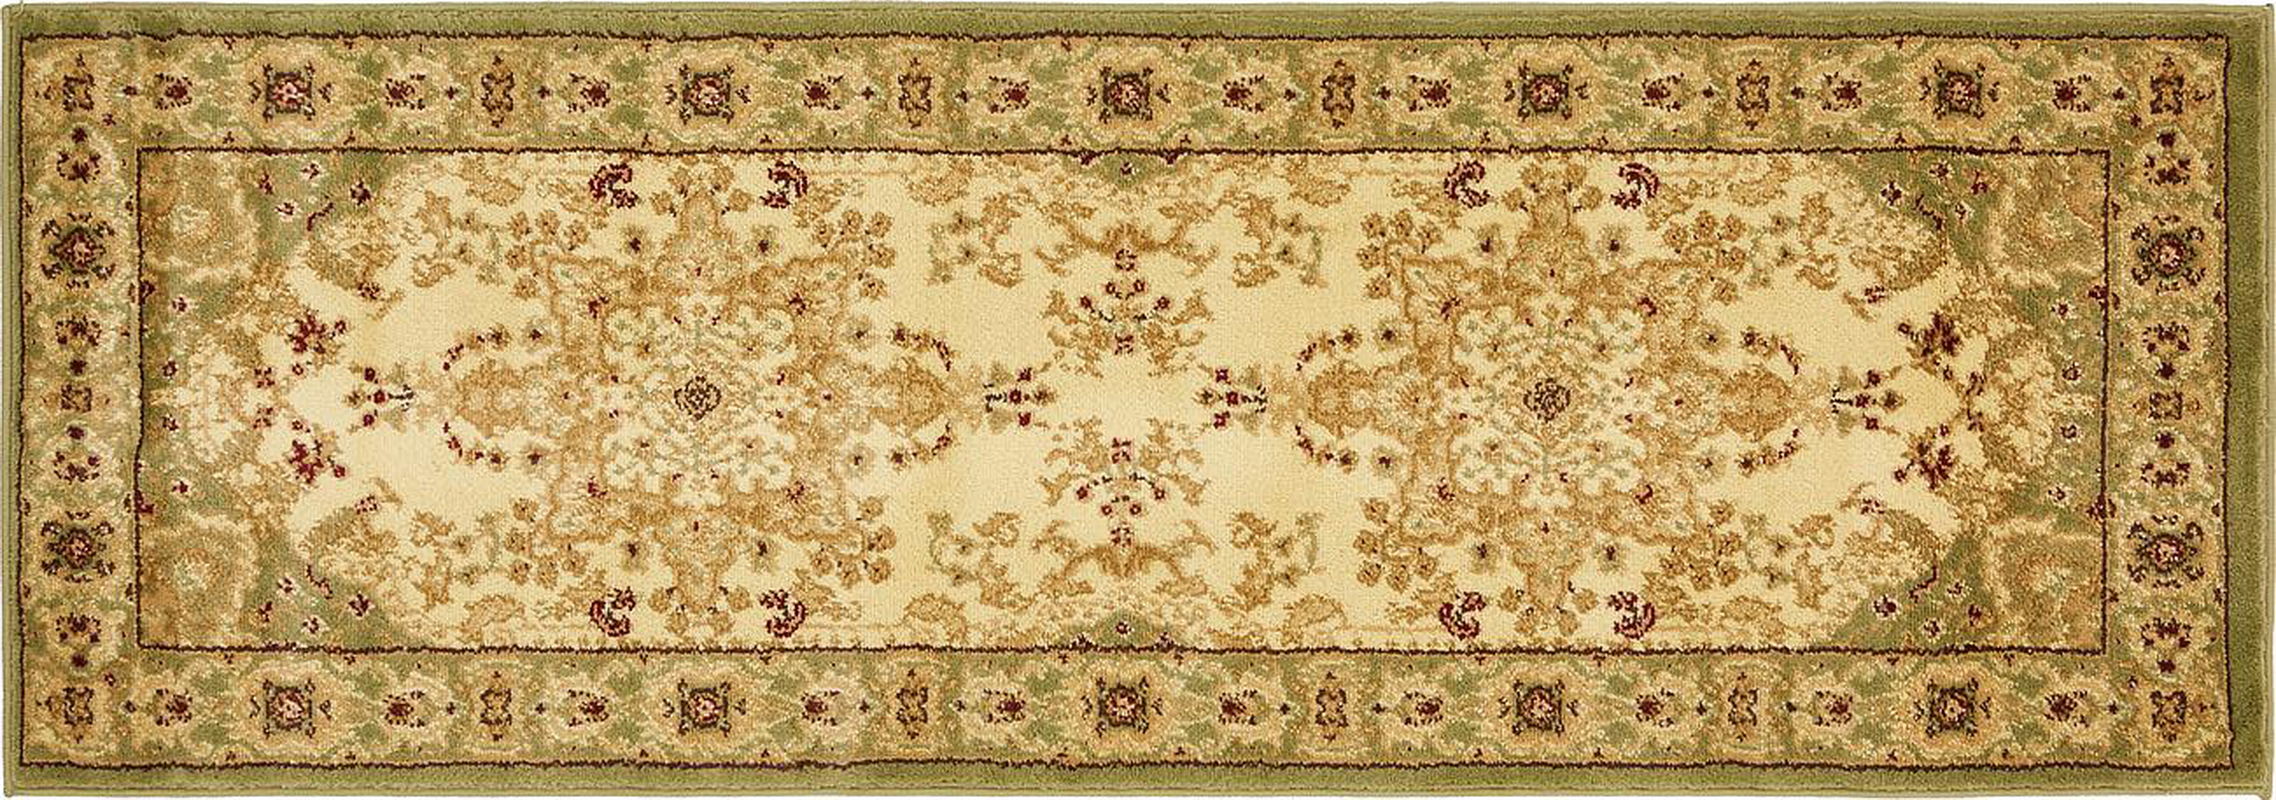 古典经典地毯ID10304